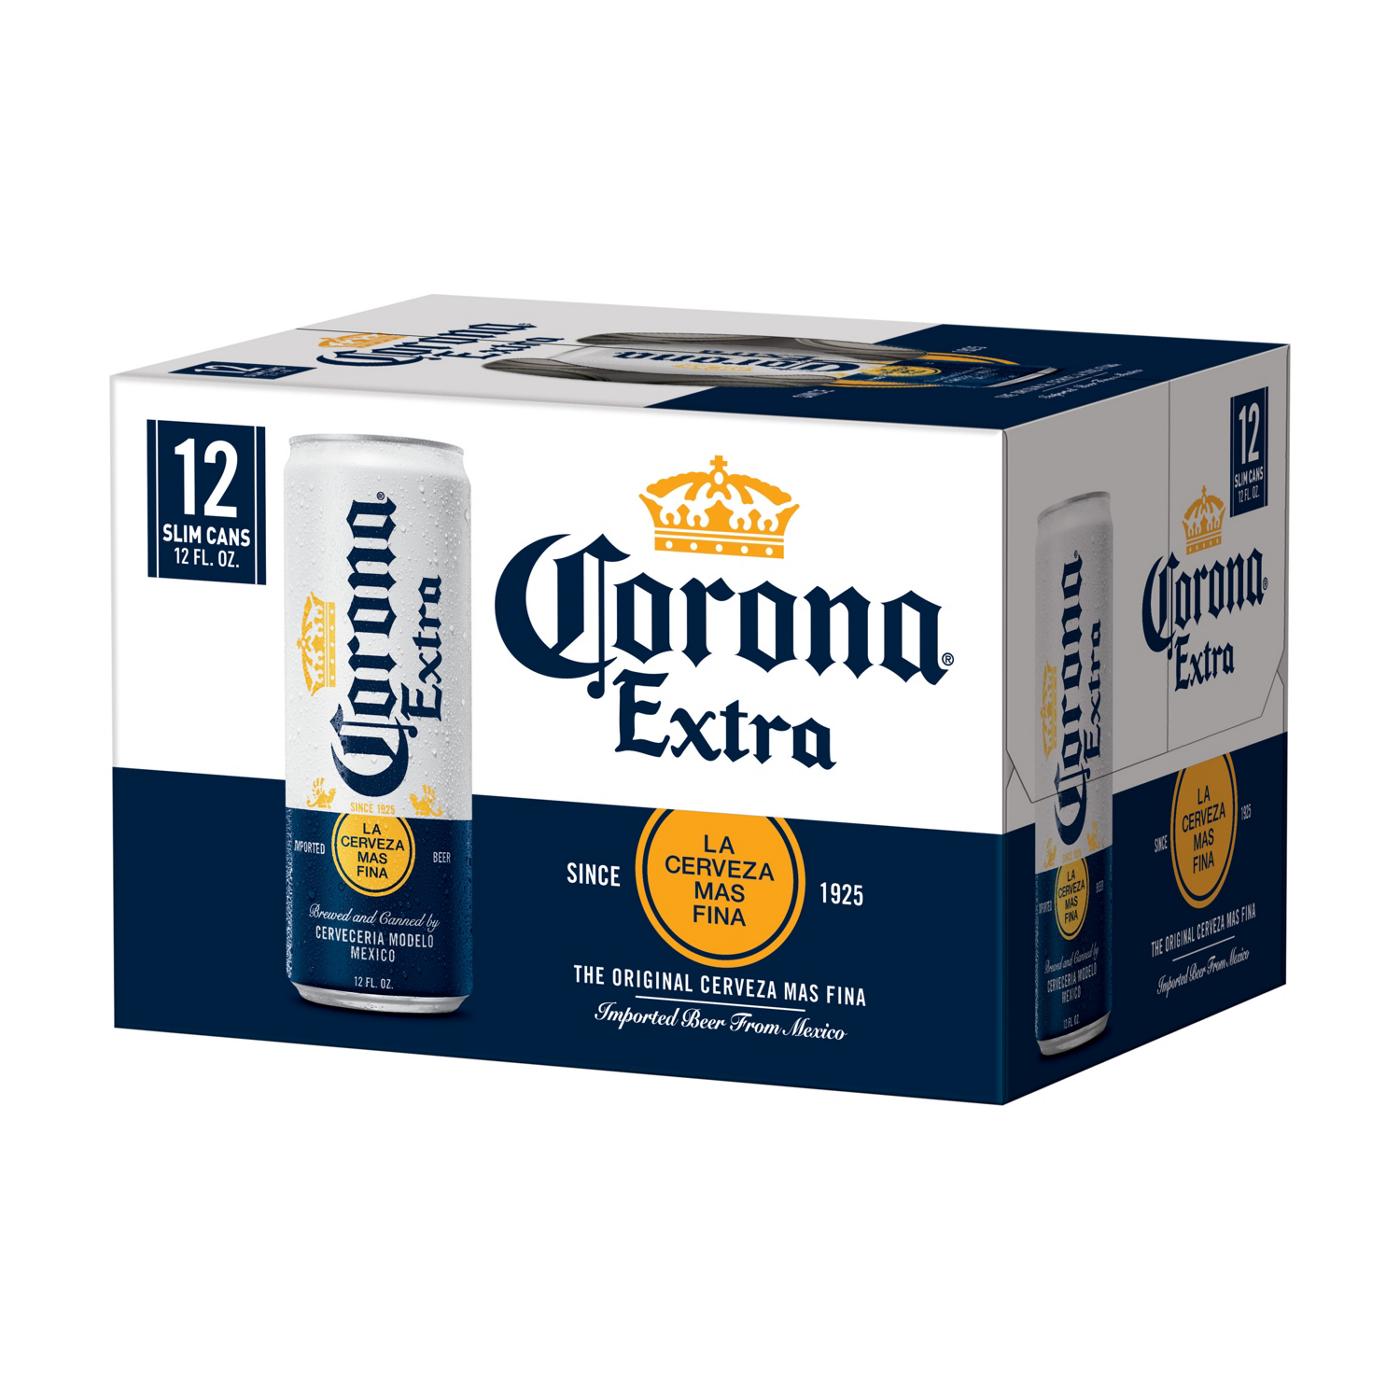 Pef malicioso Emulación Corona Extra Mexican Lager Beer 12 oz Cans - Shop Beer at H-E-B